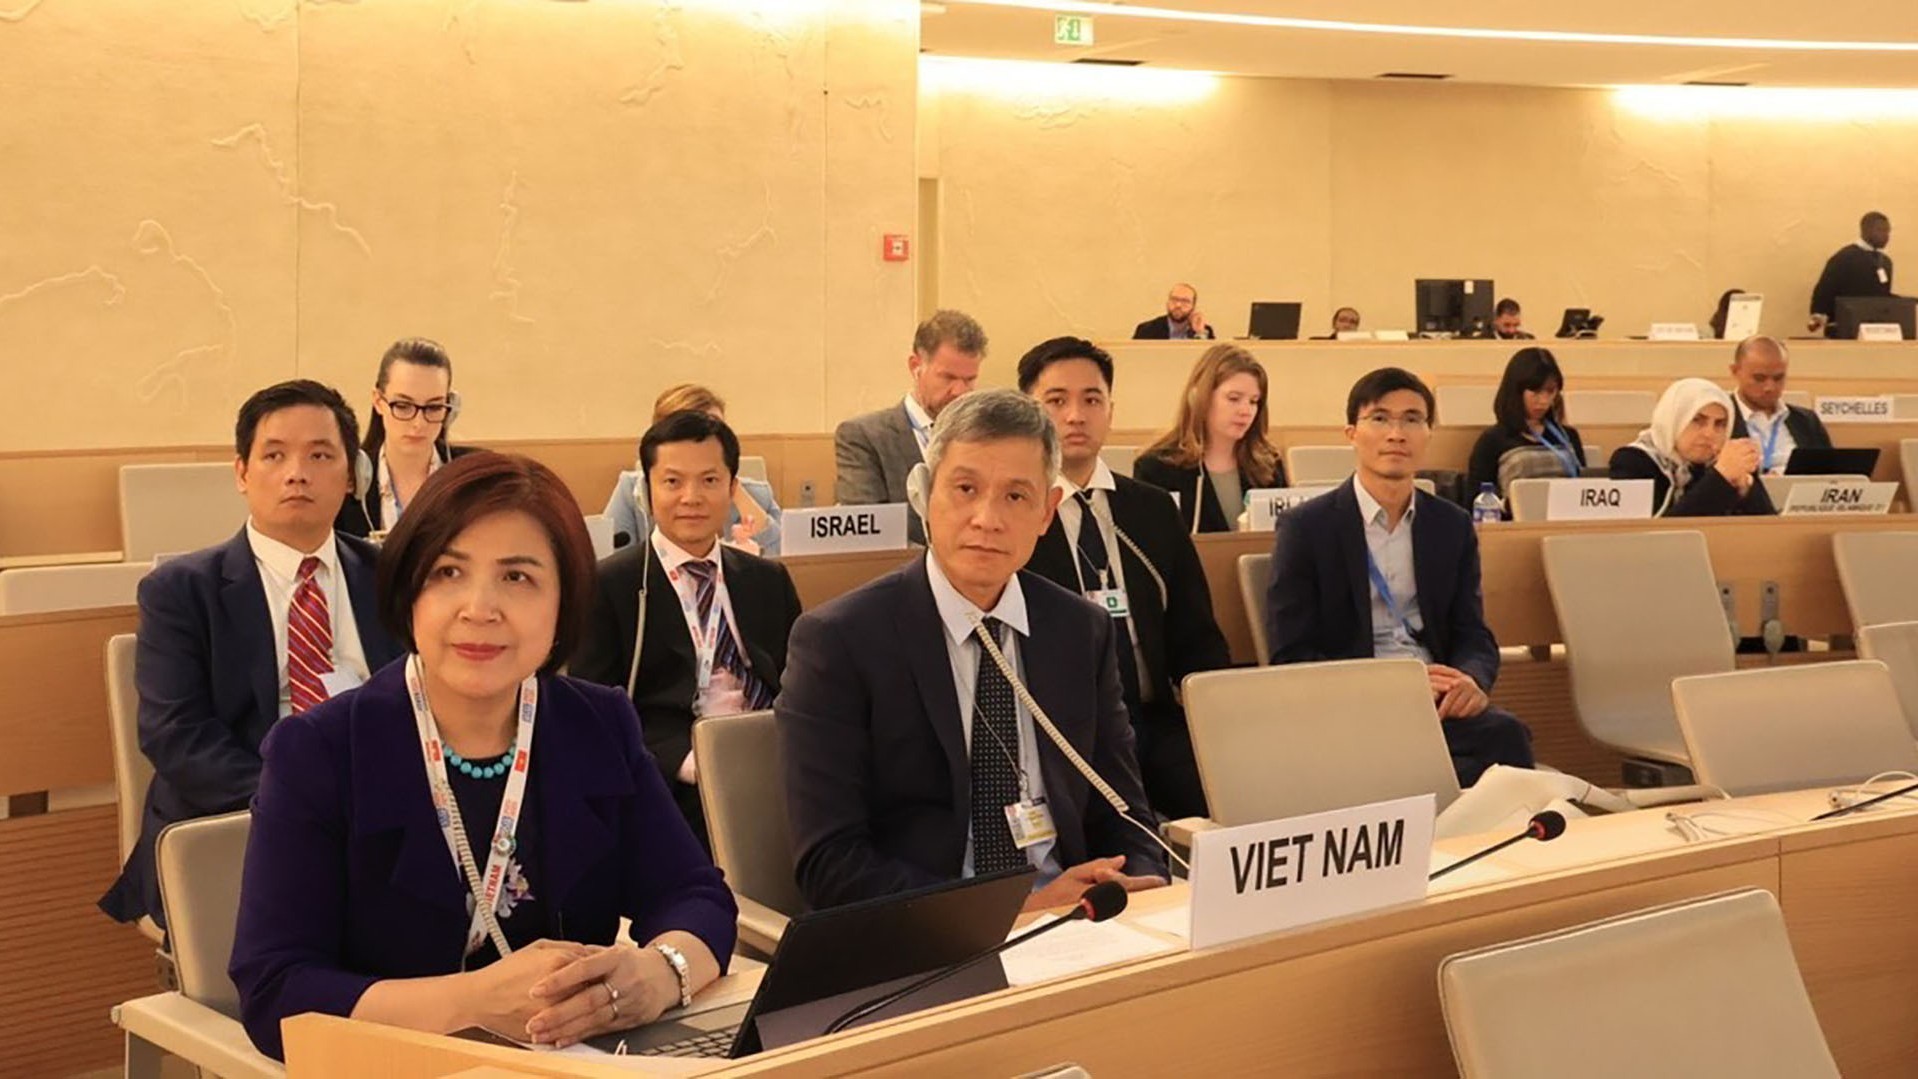 Việt Nam chia sẻ kinh nghiệm, thúc đẩy đối thoại và hợp tác quốc tế để bảo đảm quyền con người trước thách thức toàn cầu